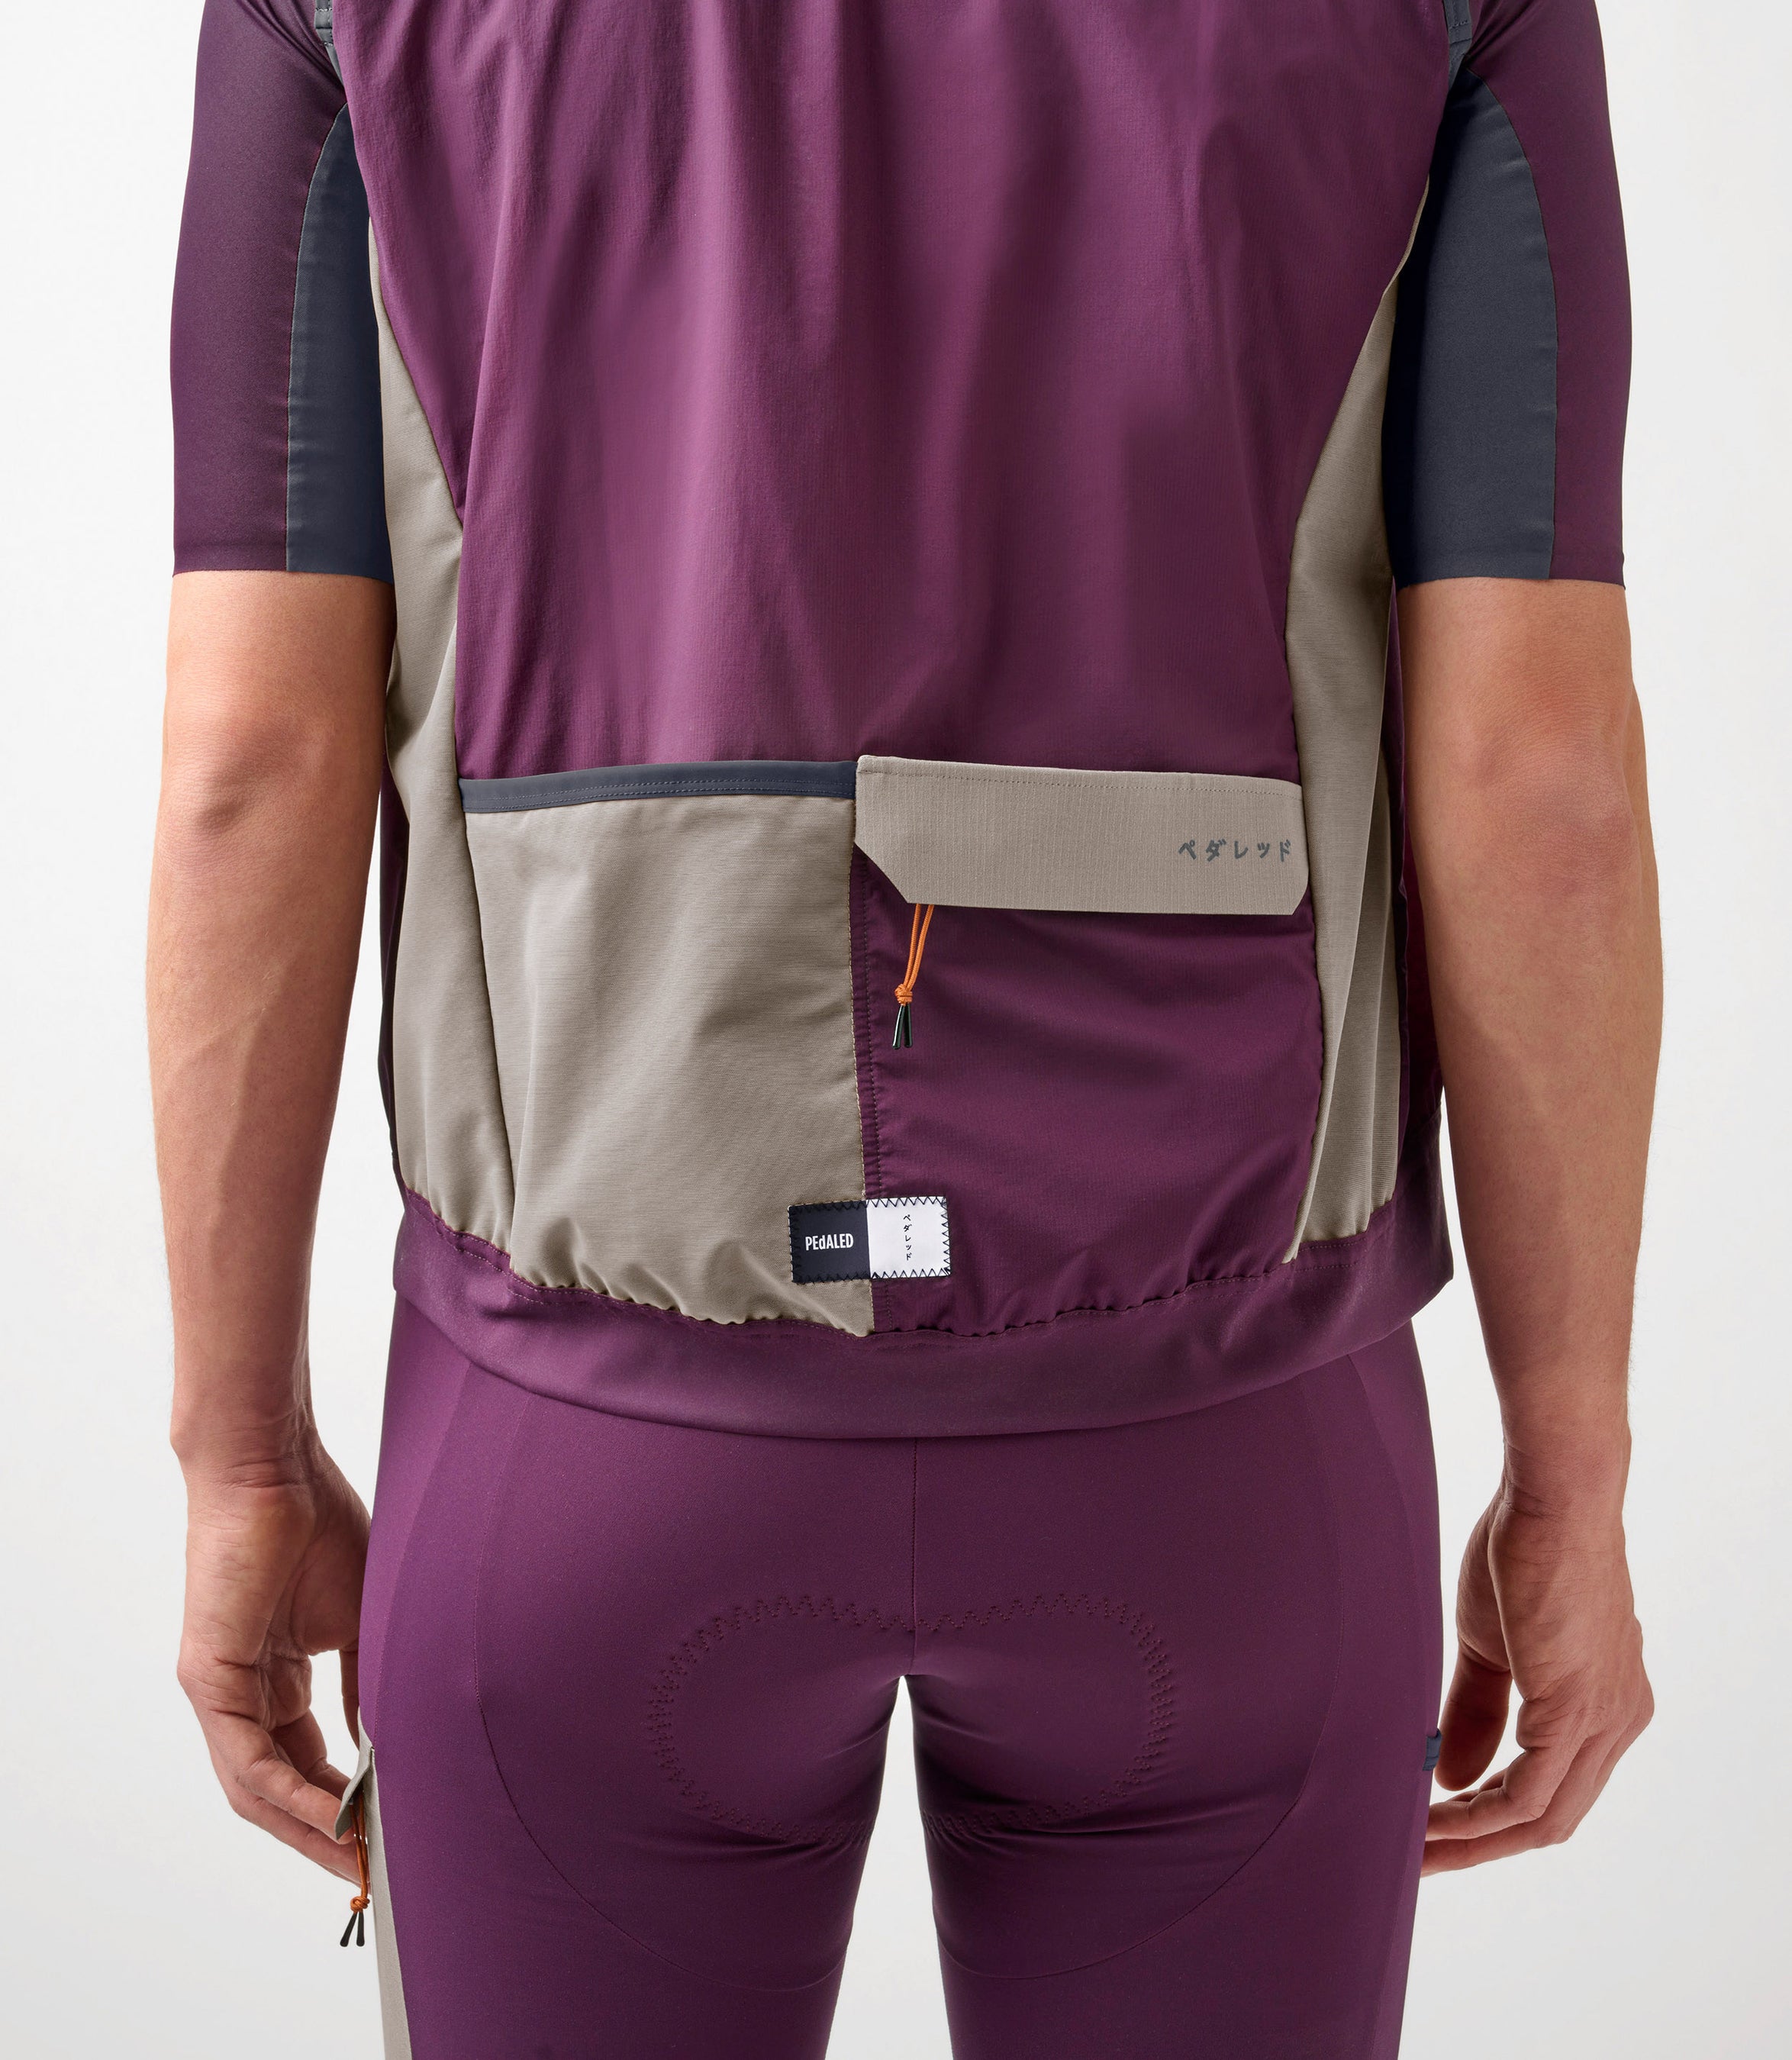 23SAVOD10PE_7_men cycling alpha vest purple odyssey back pocket pedaled